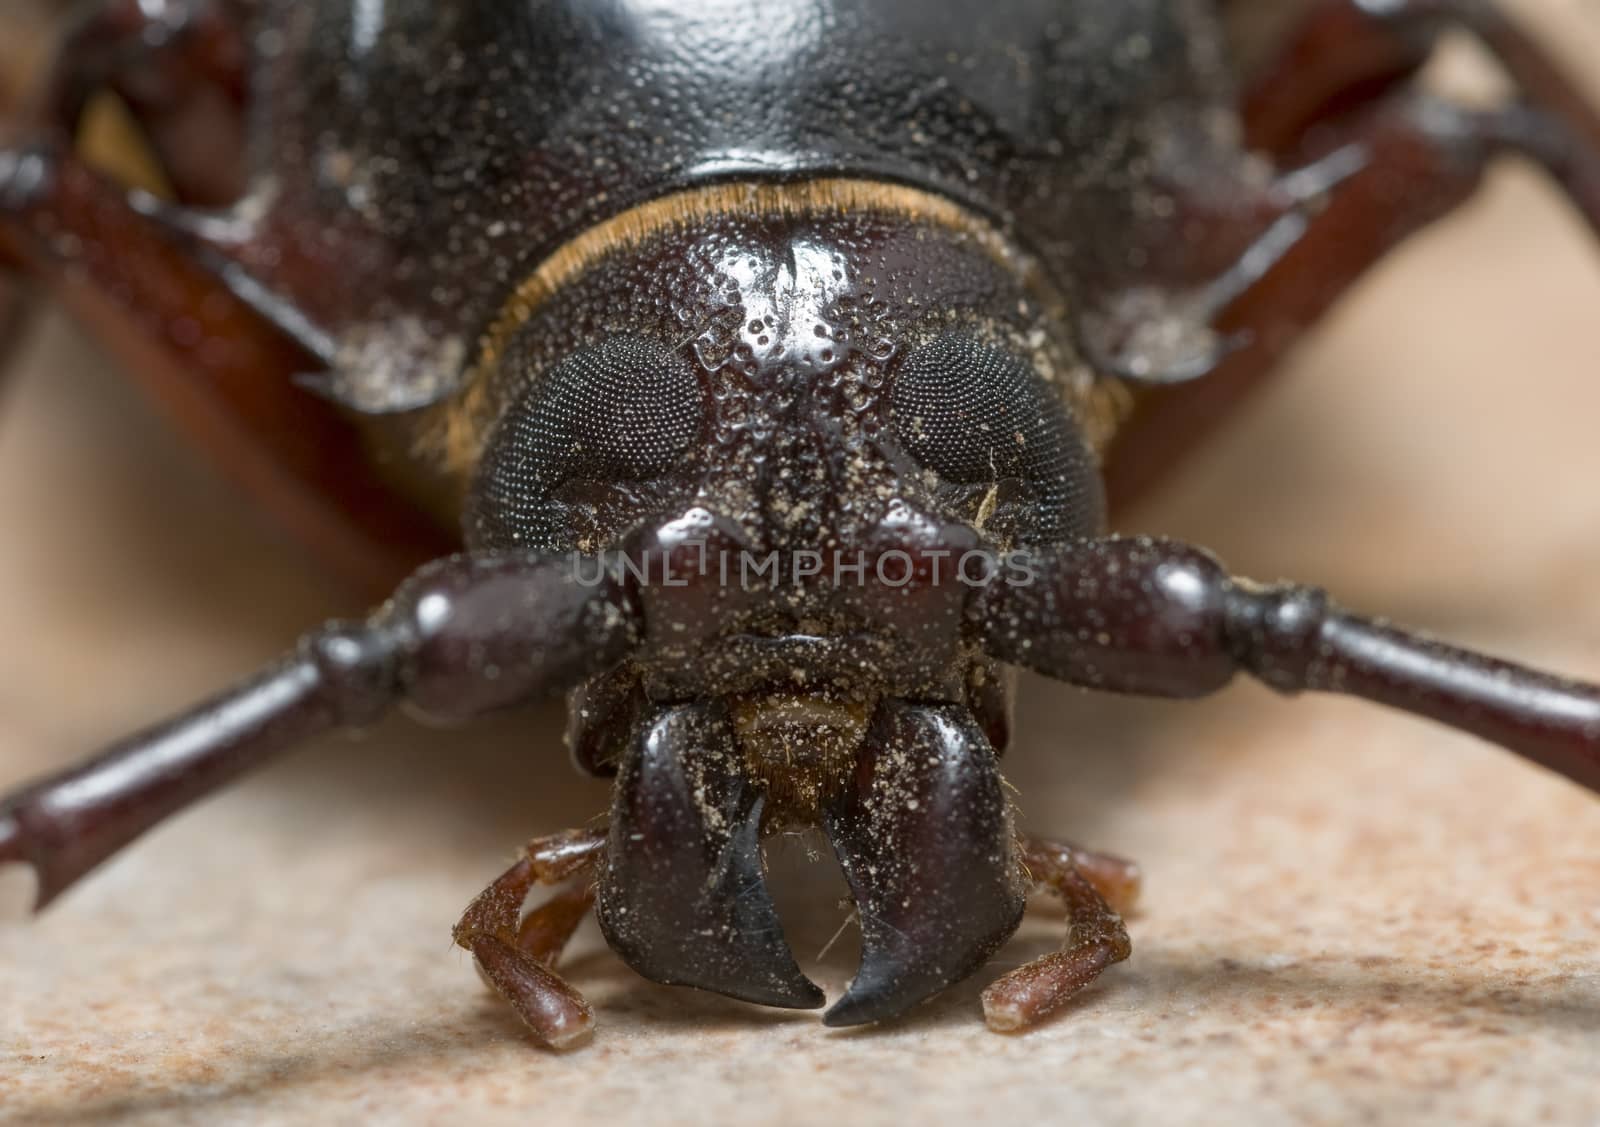 California prionus beetle (Prionus californicus) also called pri by Njean